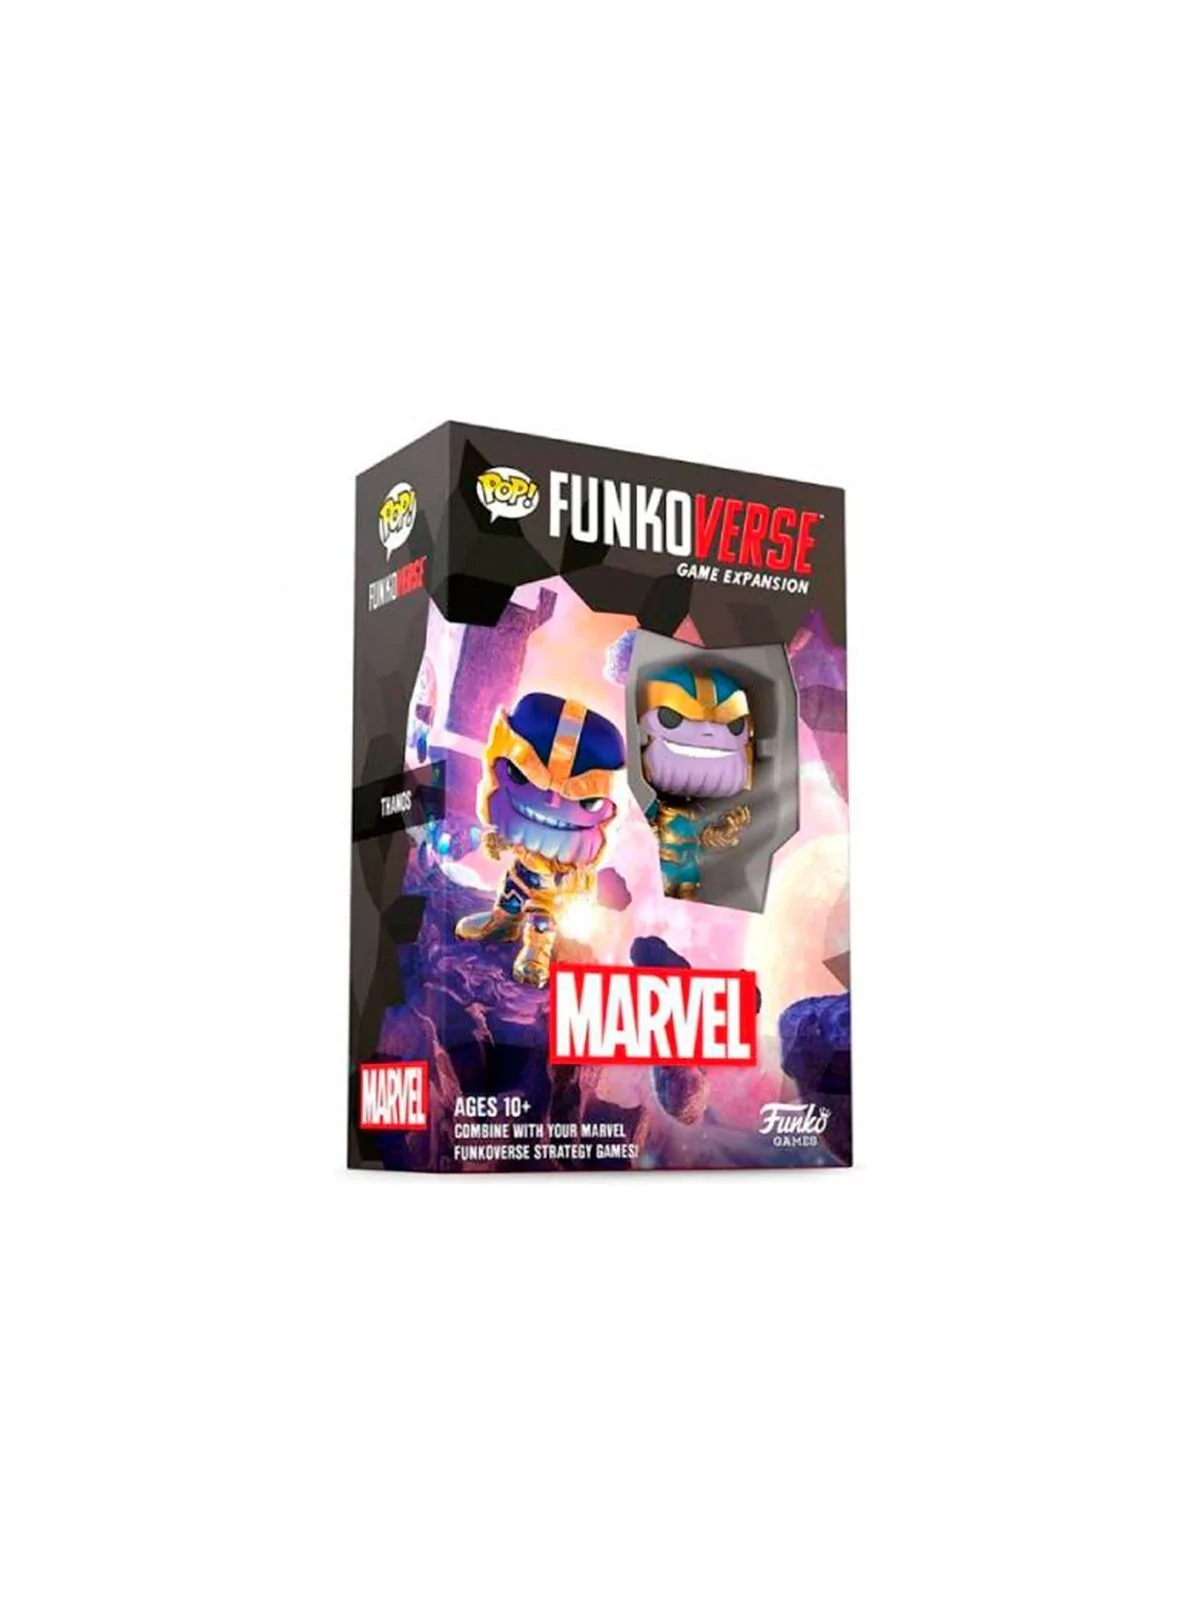 Comprar Funkoverse Strategy Game - Marvel 1 Figura barato al mejor pre